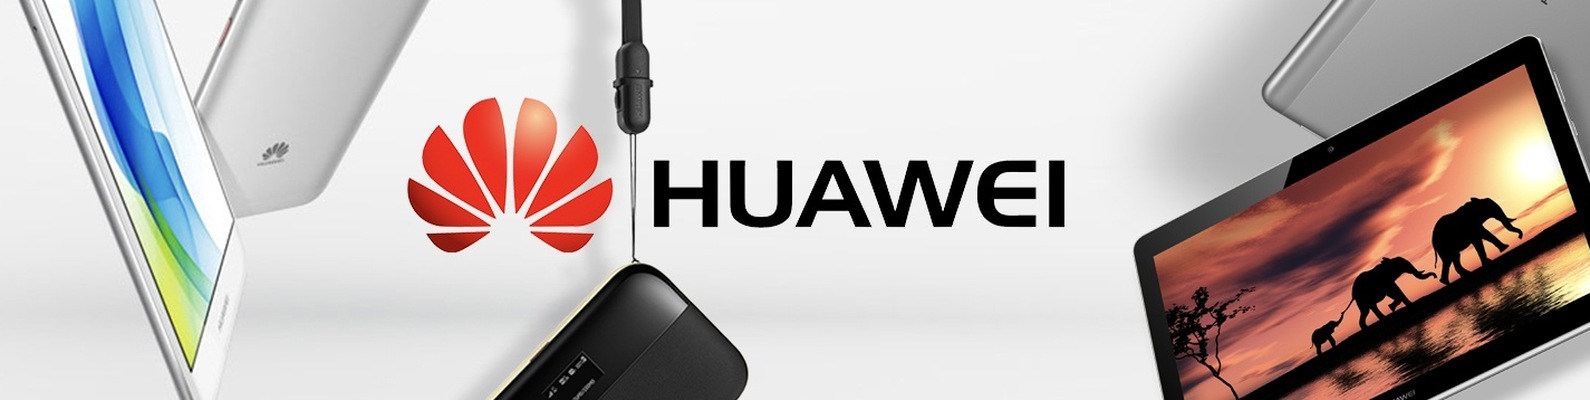 You are currently viewing Обновления для 89 моделей устройств Huawei и Honor до Hongmeng HarmonyOS 2.0.0.230 и выше